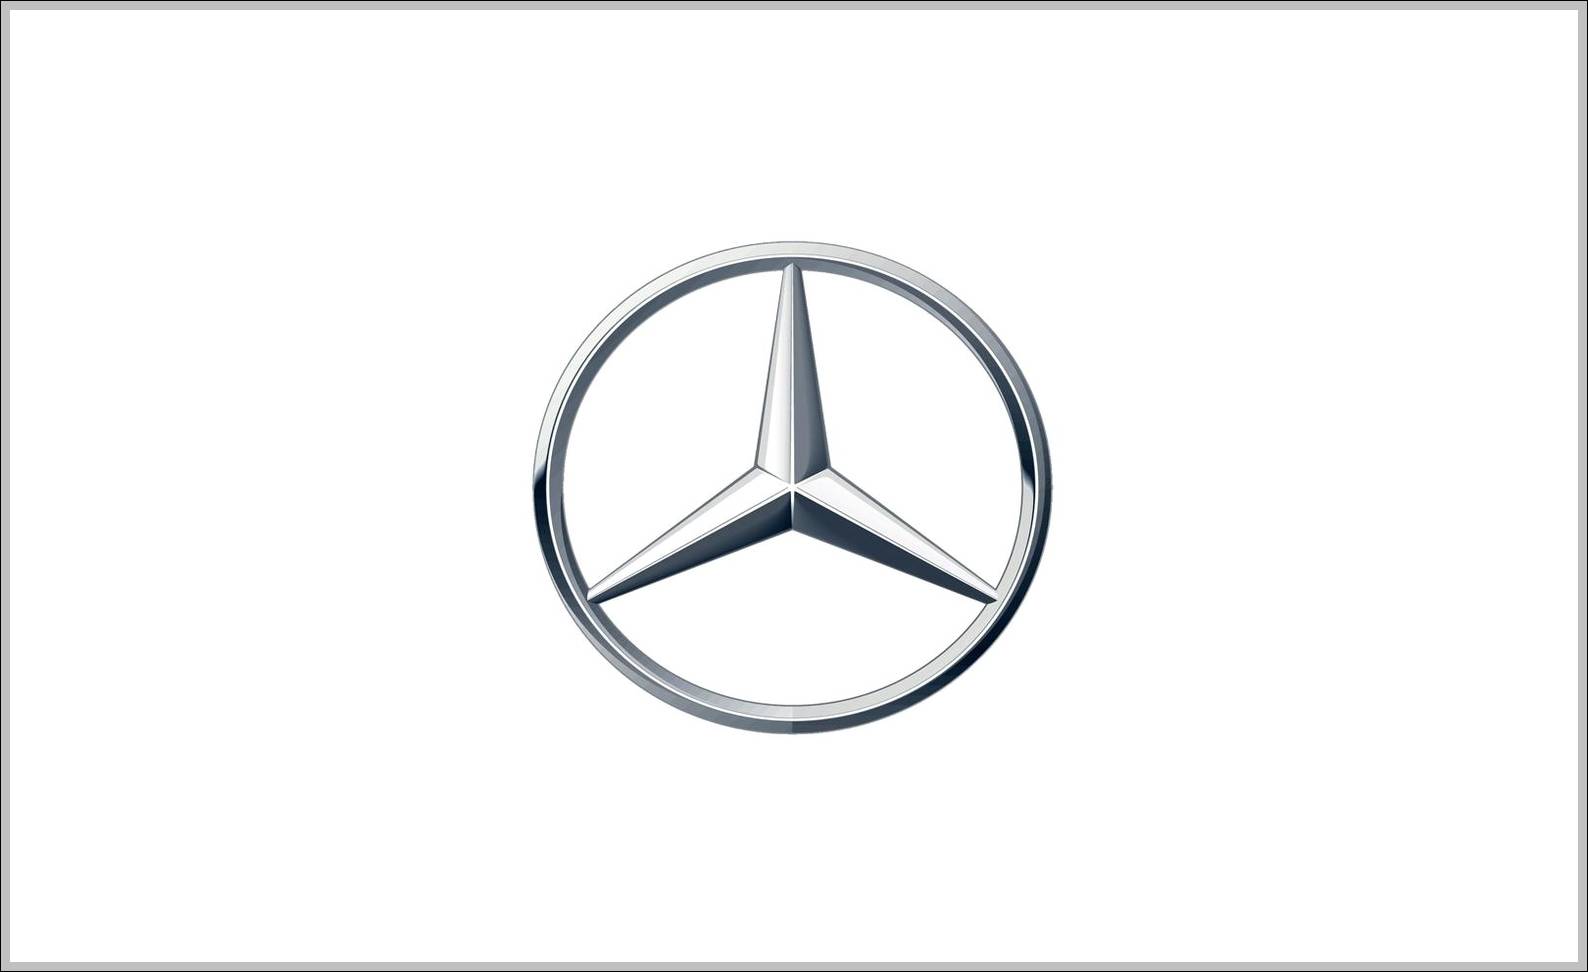 Mercedes Benz three pointed star logo